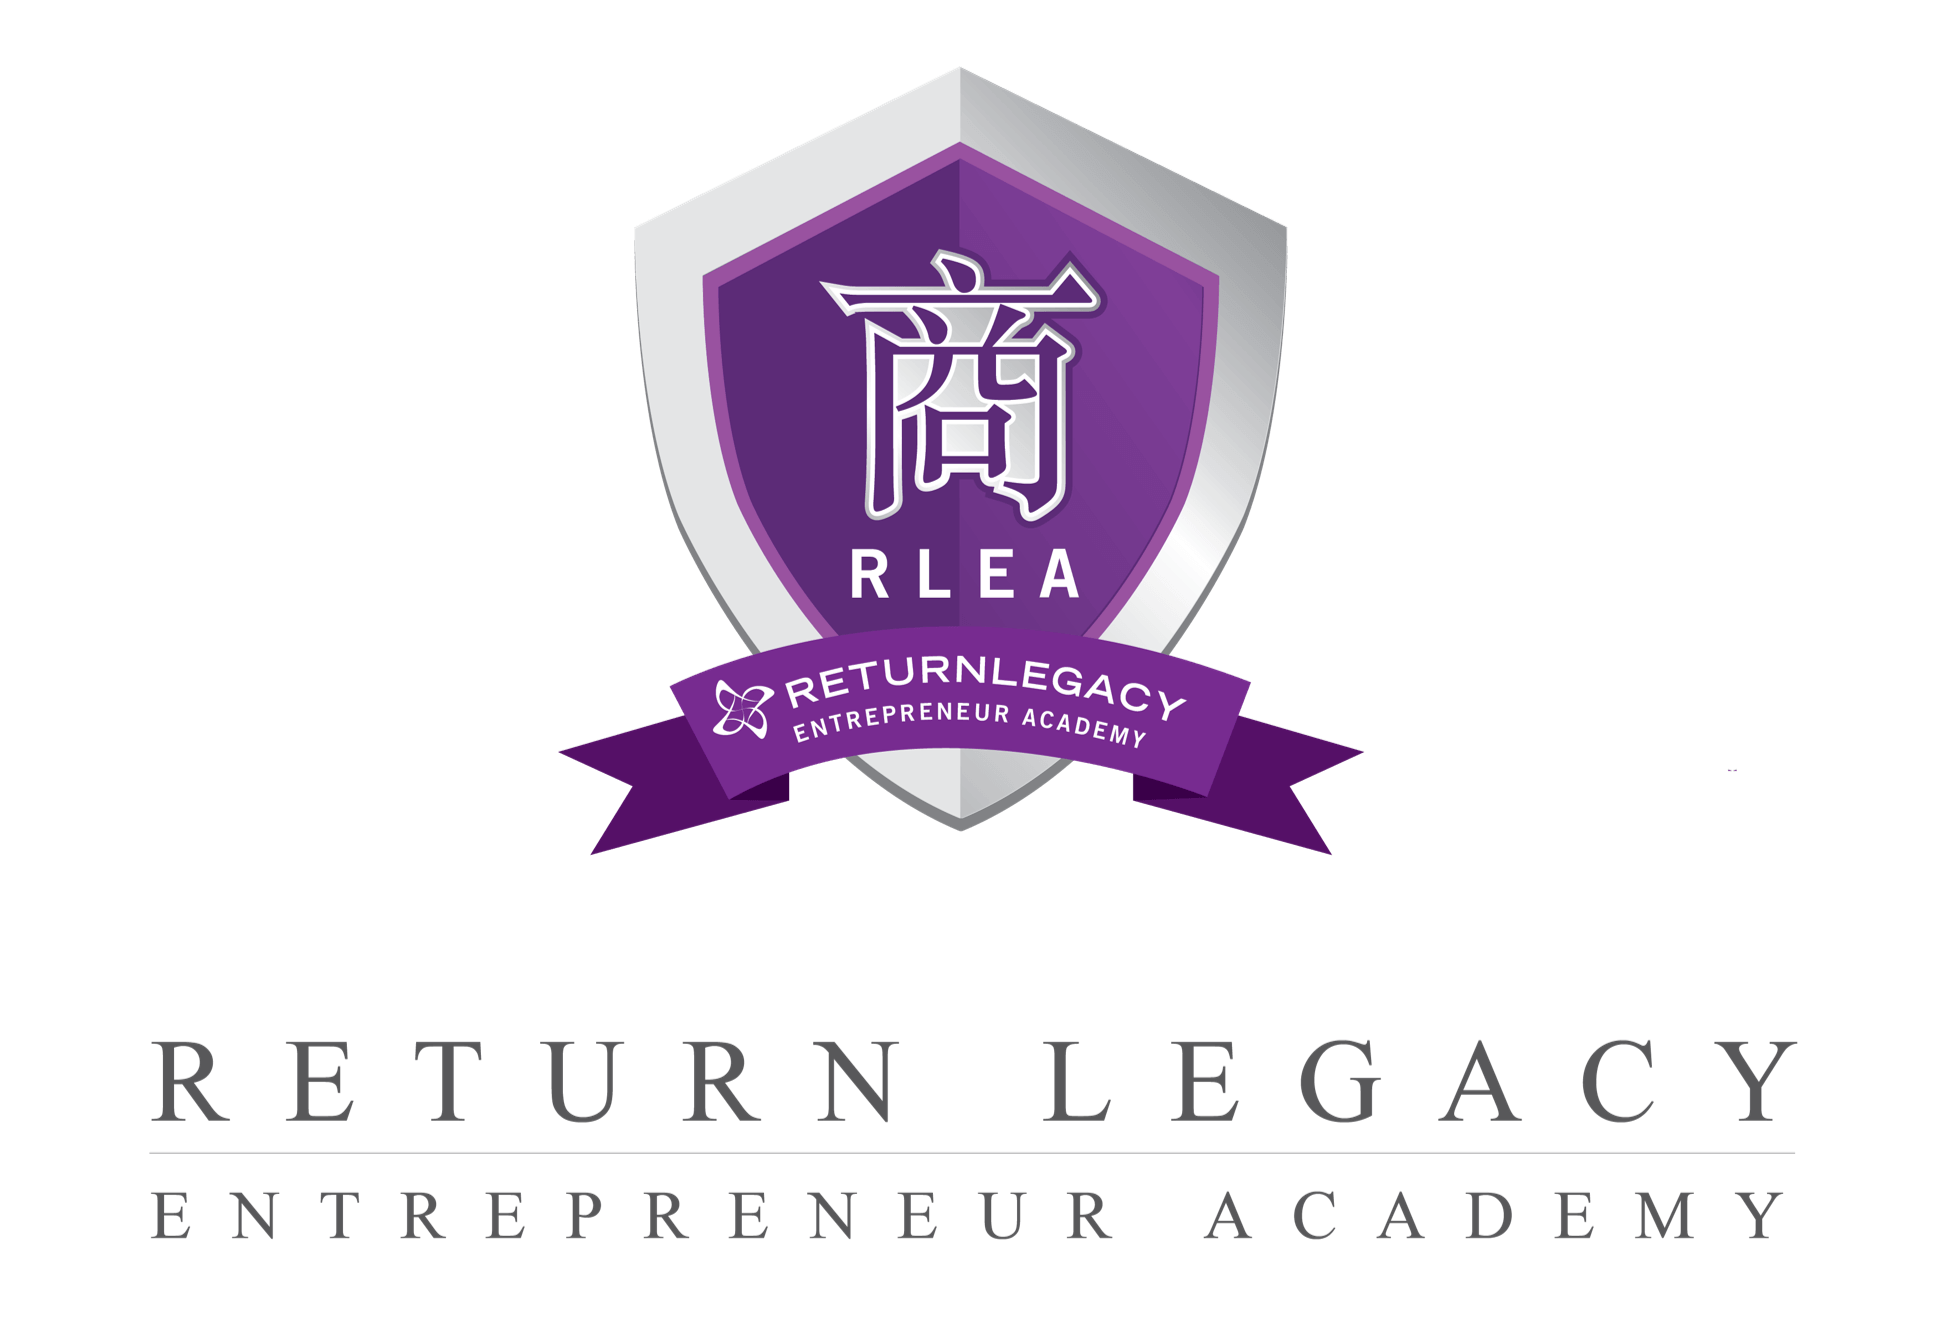 Return Legacy Entrepreneur Academy